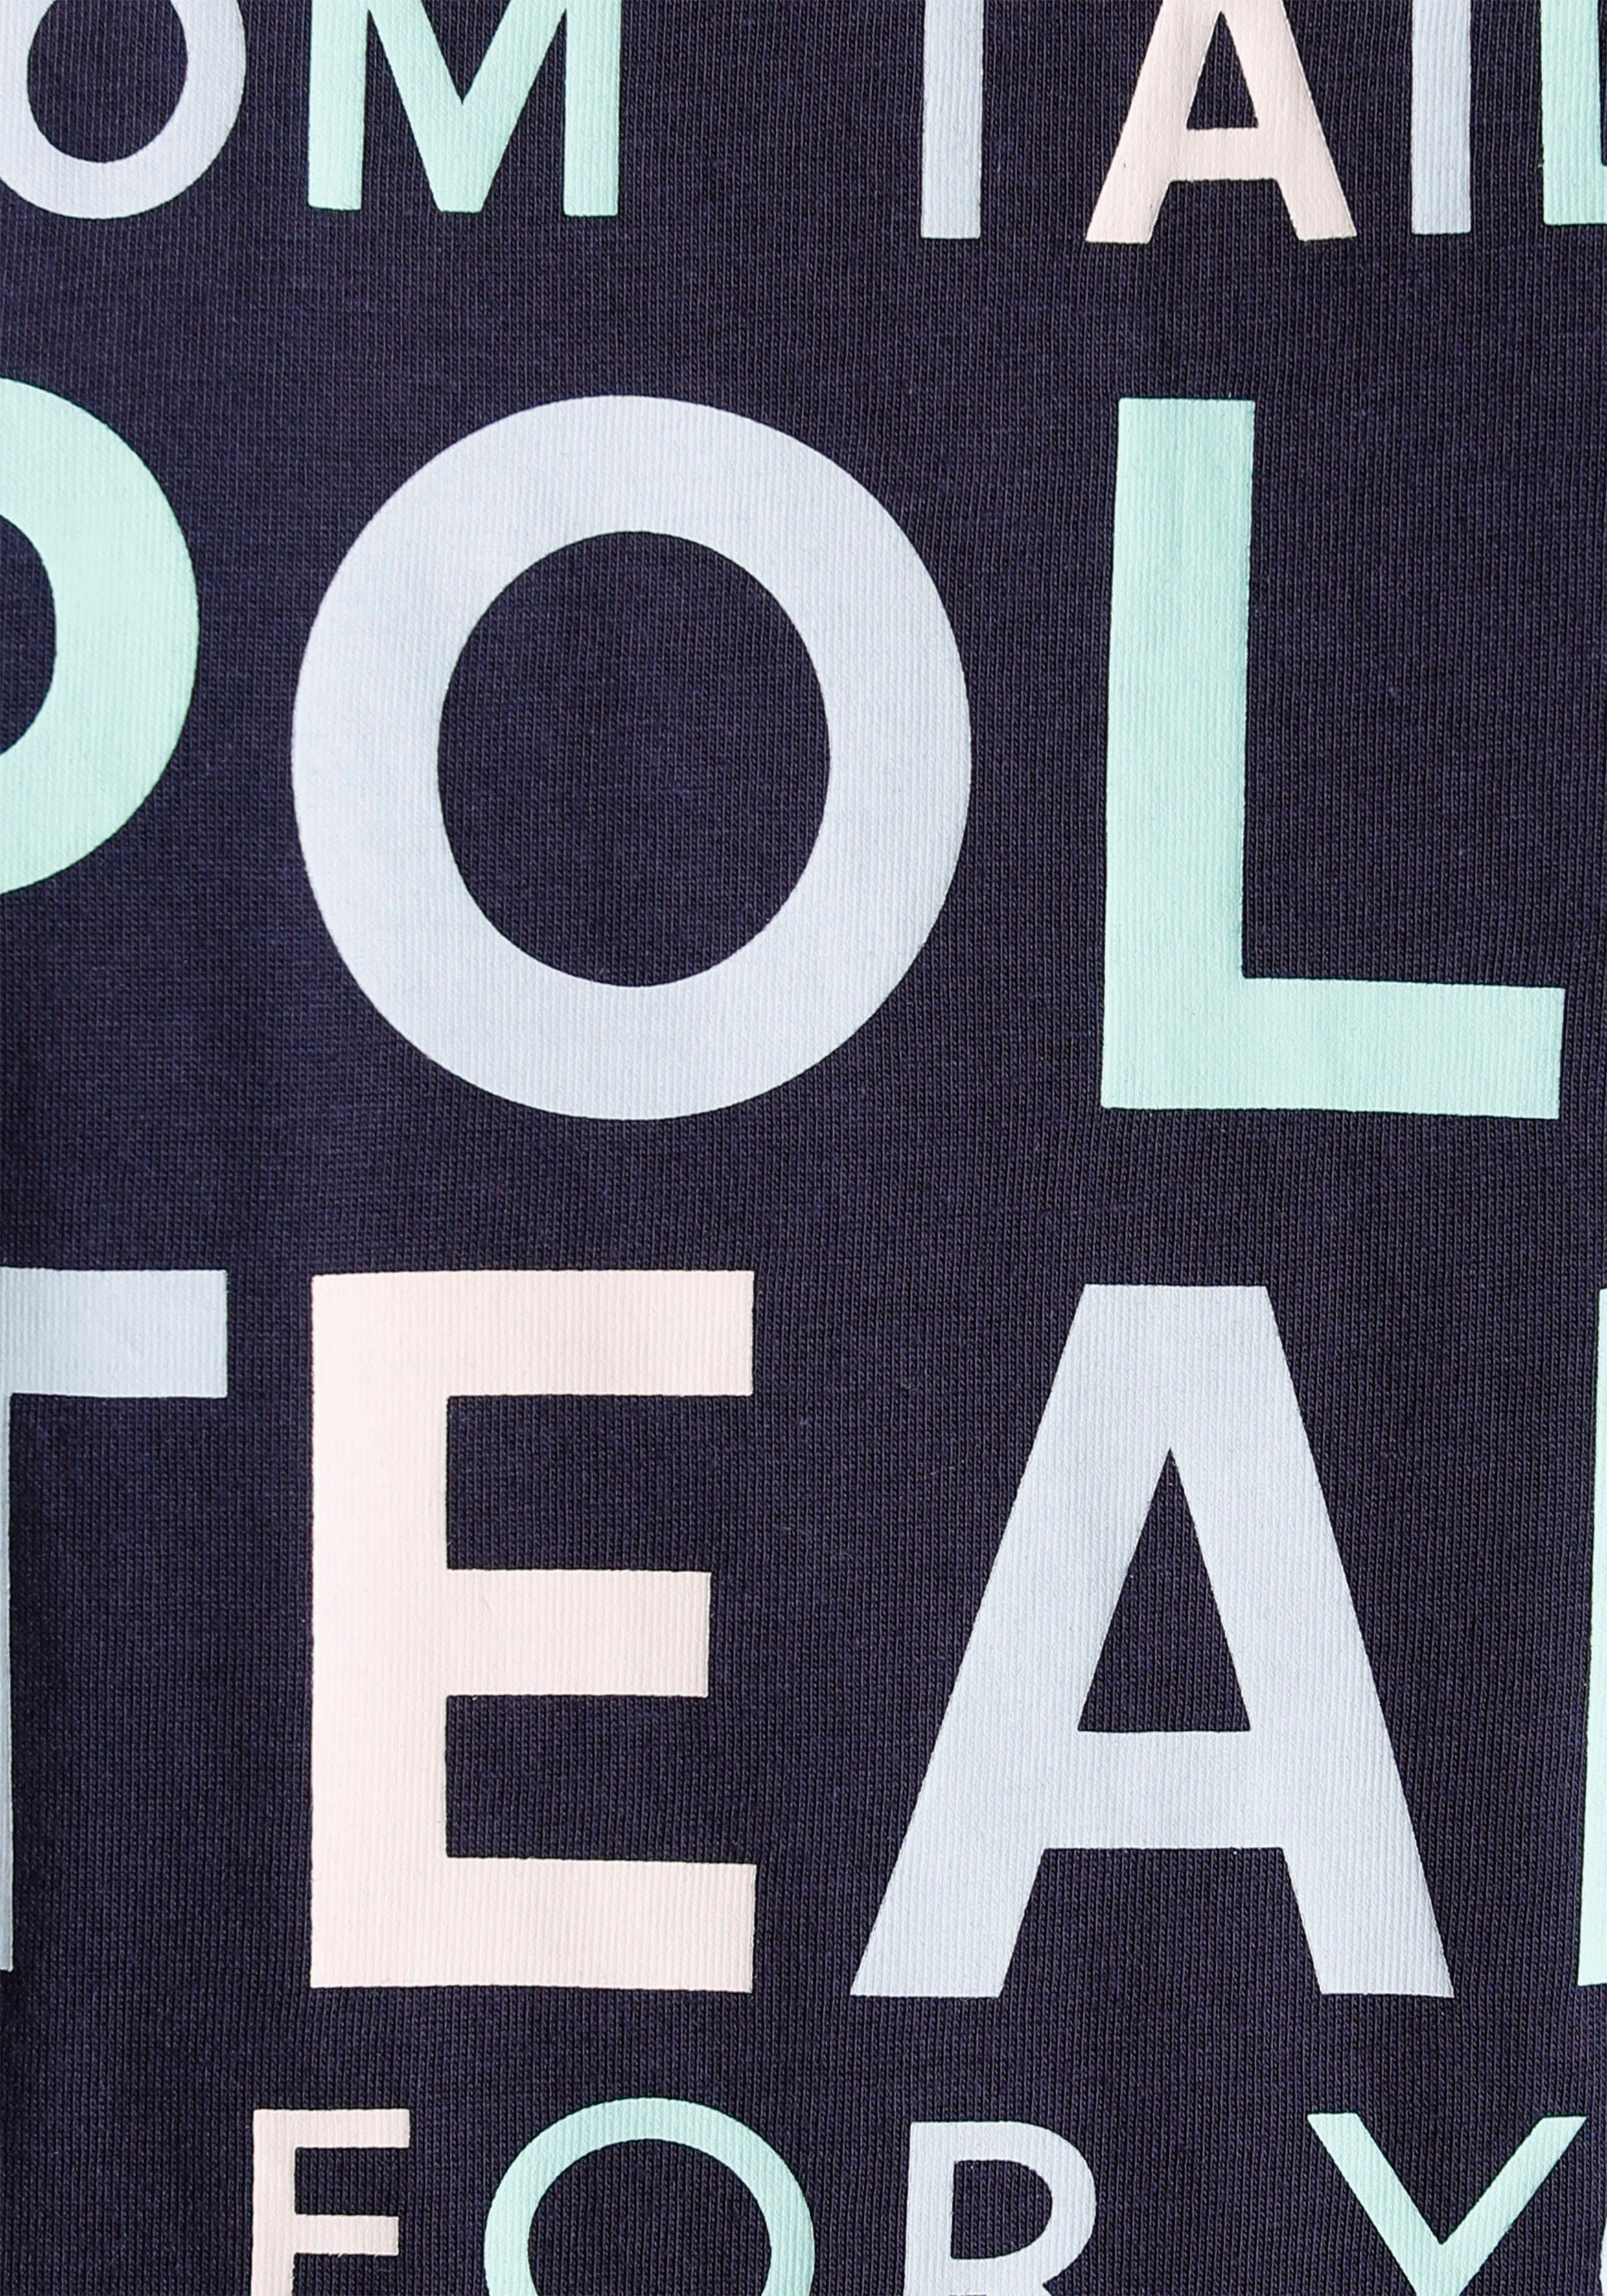 TOM TAILOR Polo Team Print-Shirt farbenfrohen Logo-Print großem